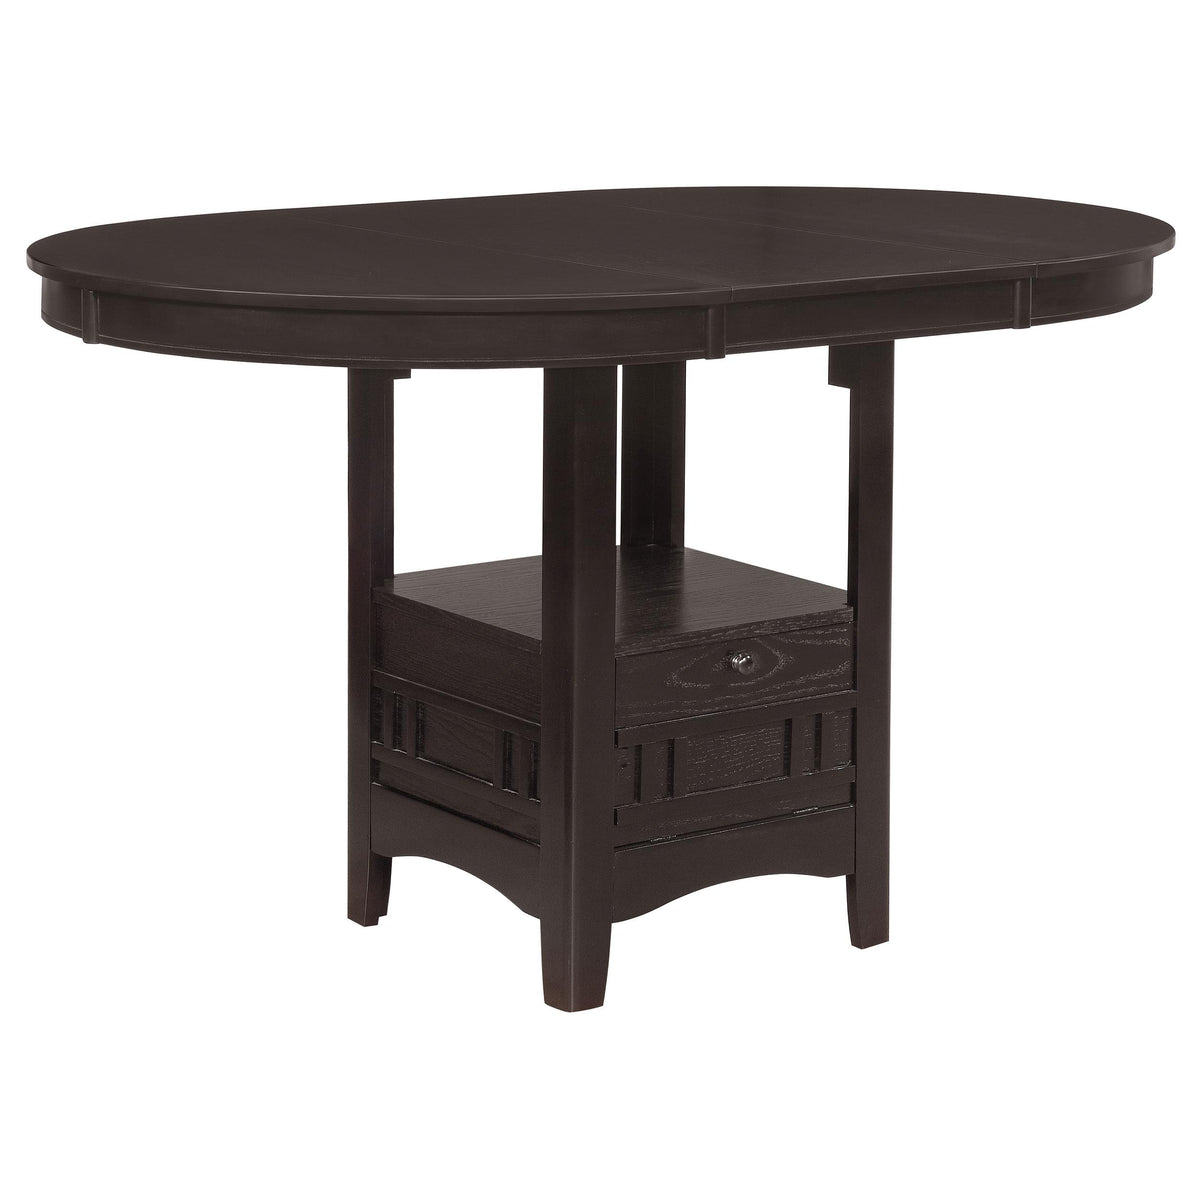 Lavon Oval Counter Height Table Espresso  Half Price Furniture